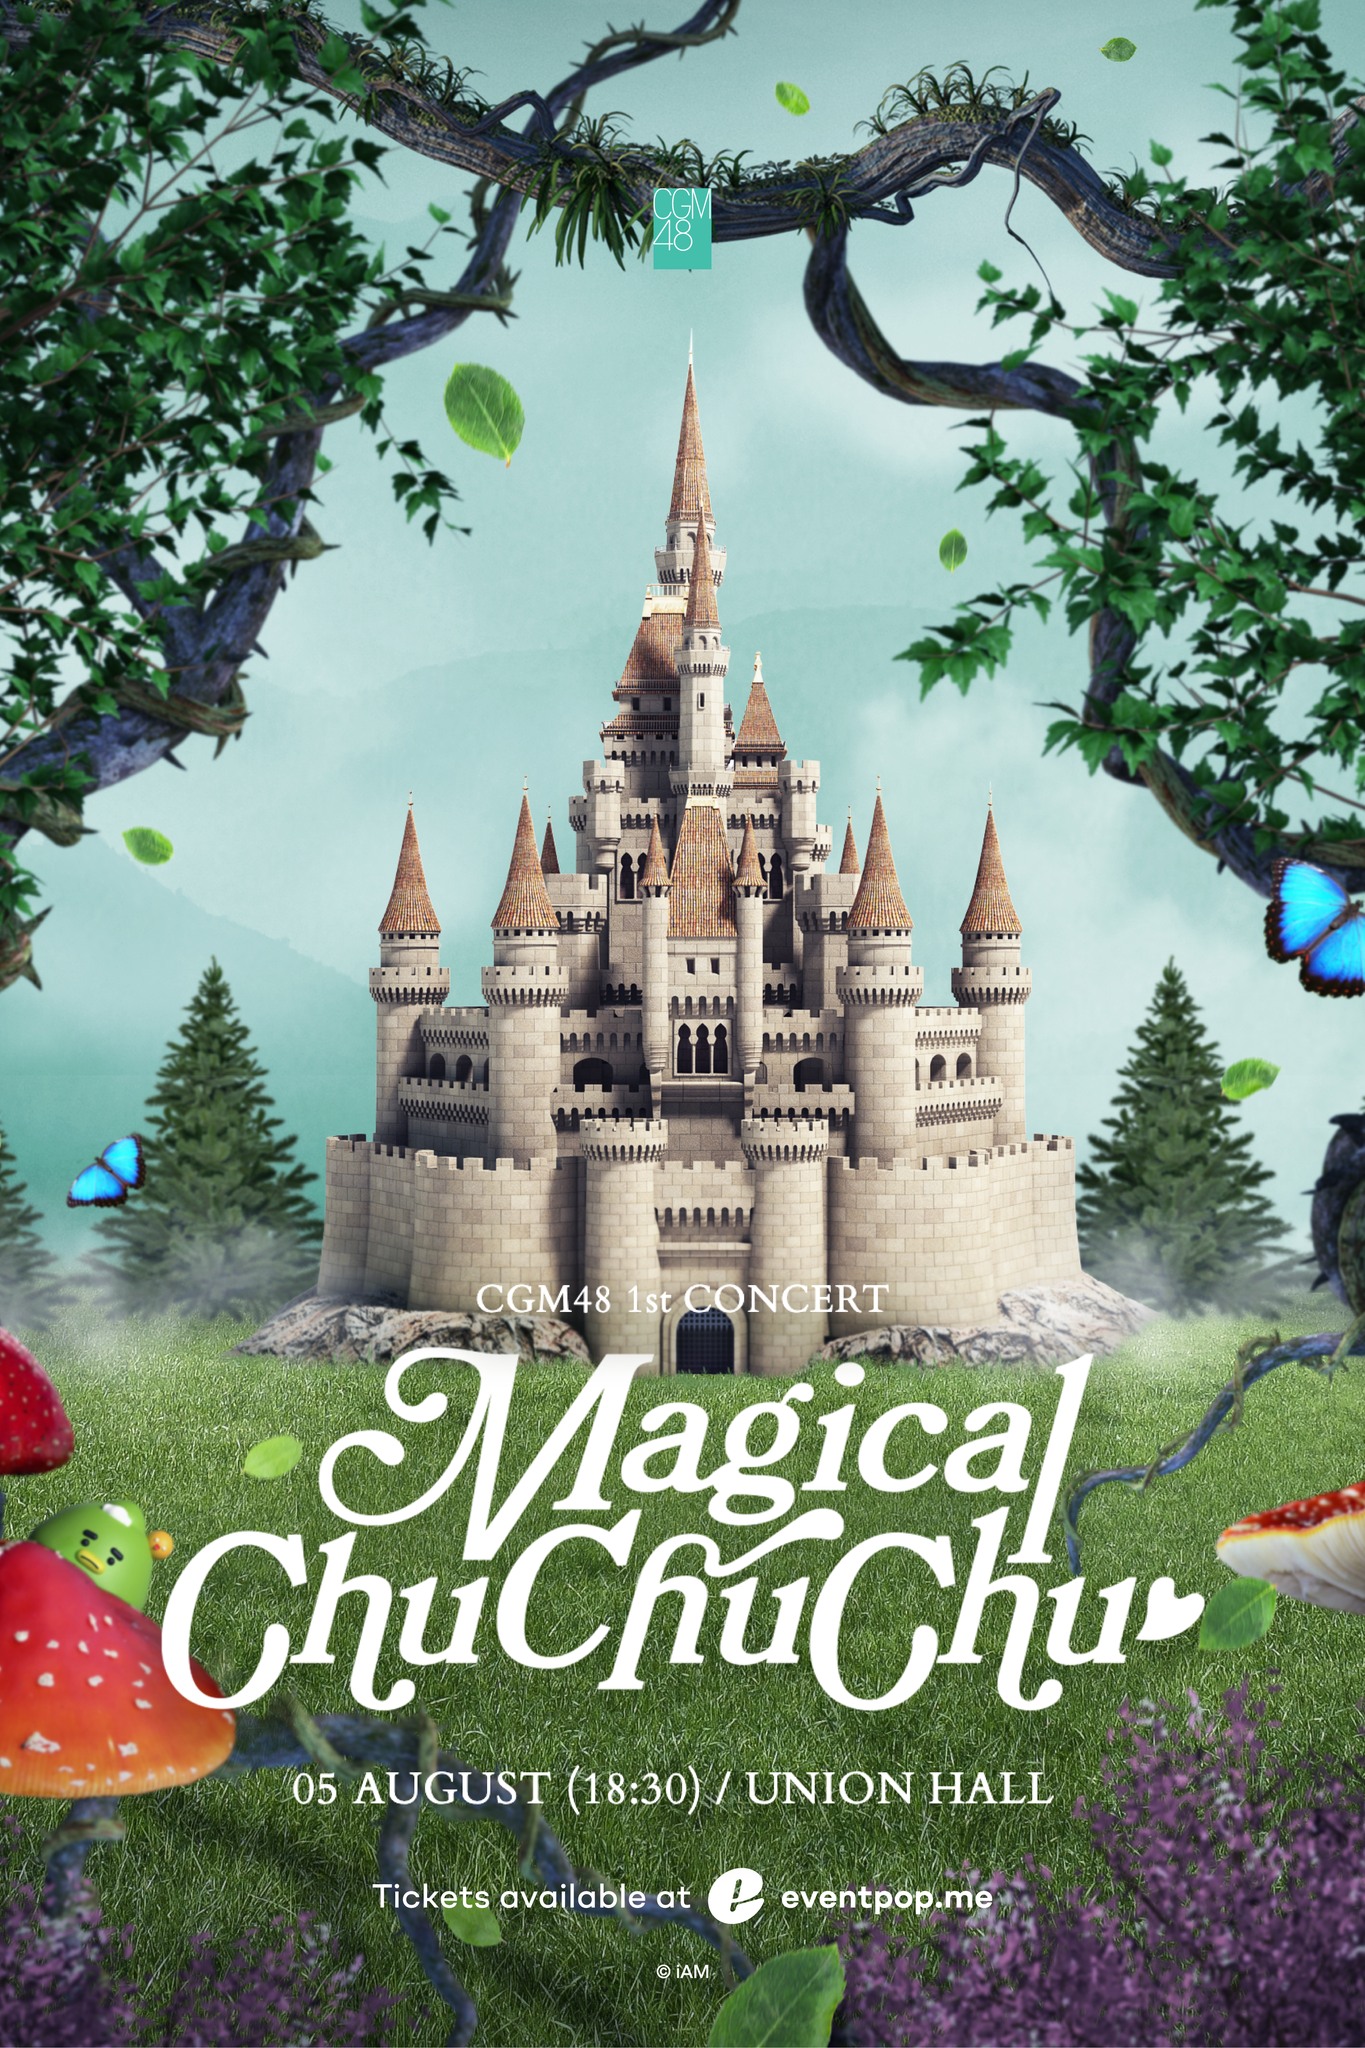 CGM48 1st Concert Magical ChuChuChu